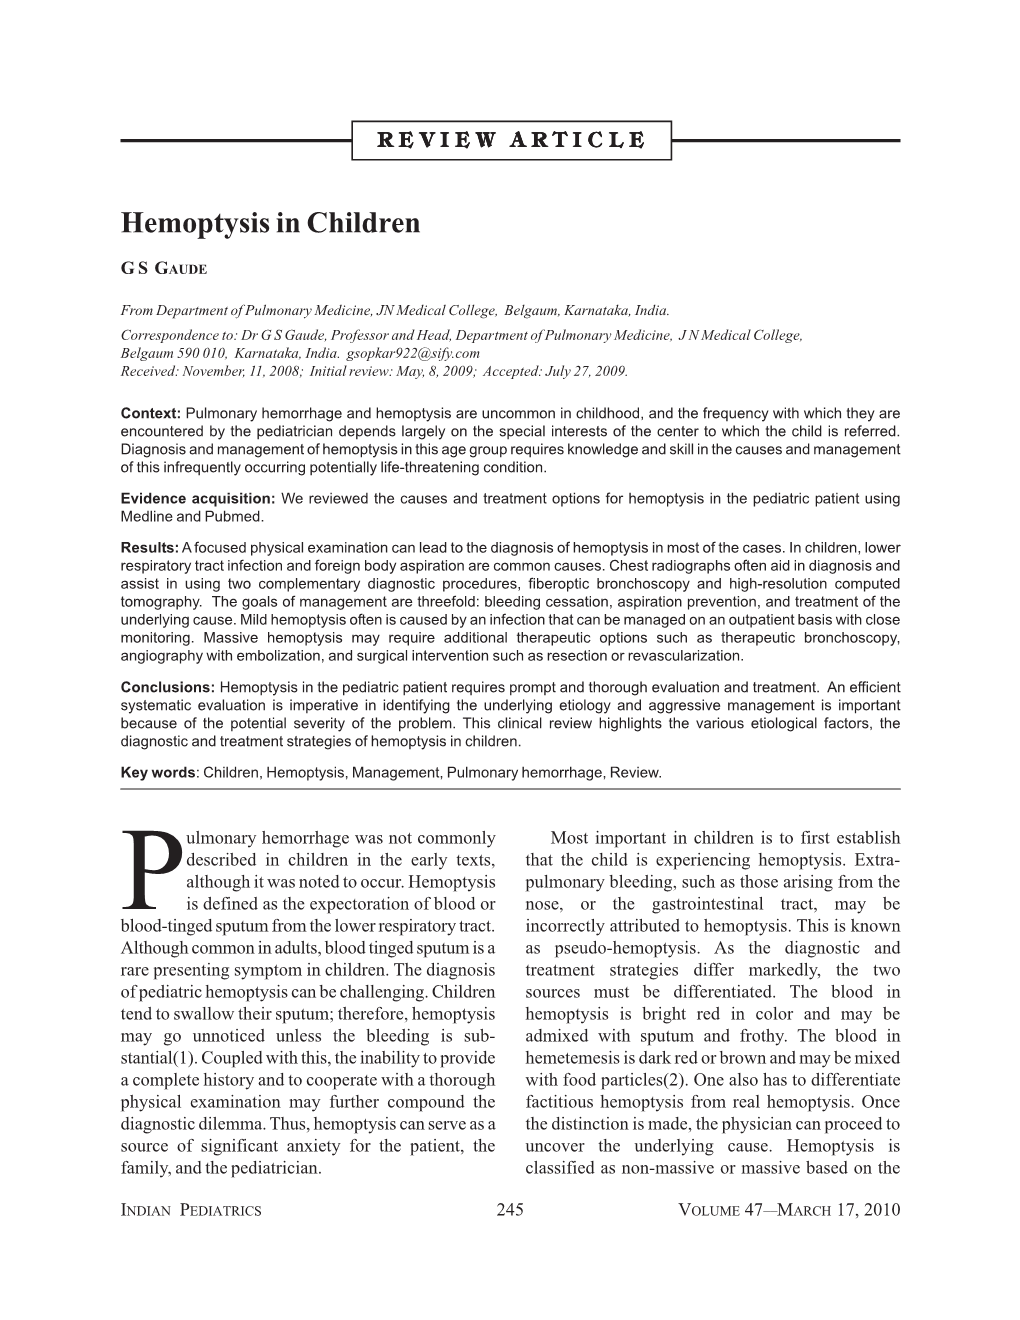 Hemoptysis in Children